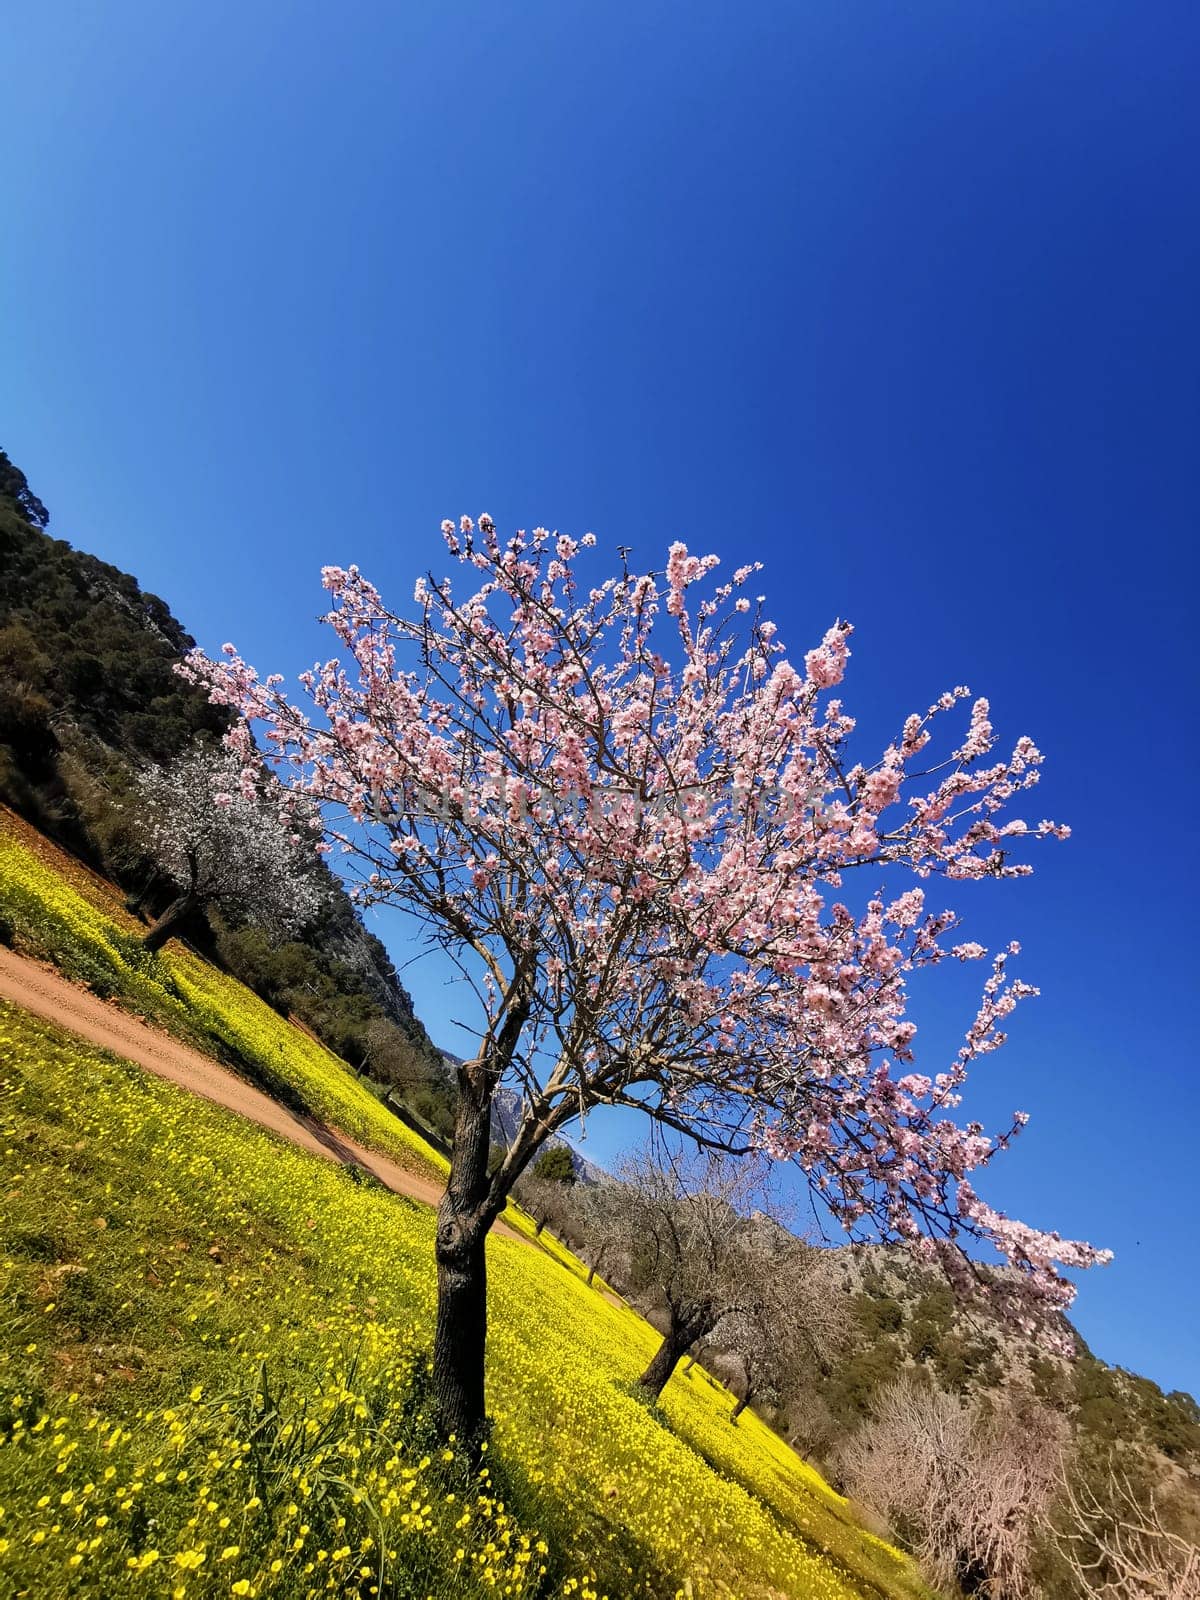 Solemn Bloom: A Single Almond Tree Amidst a Field of Wildflowers by Juanjo39